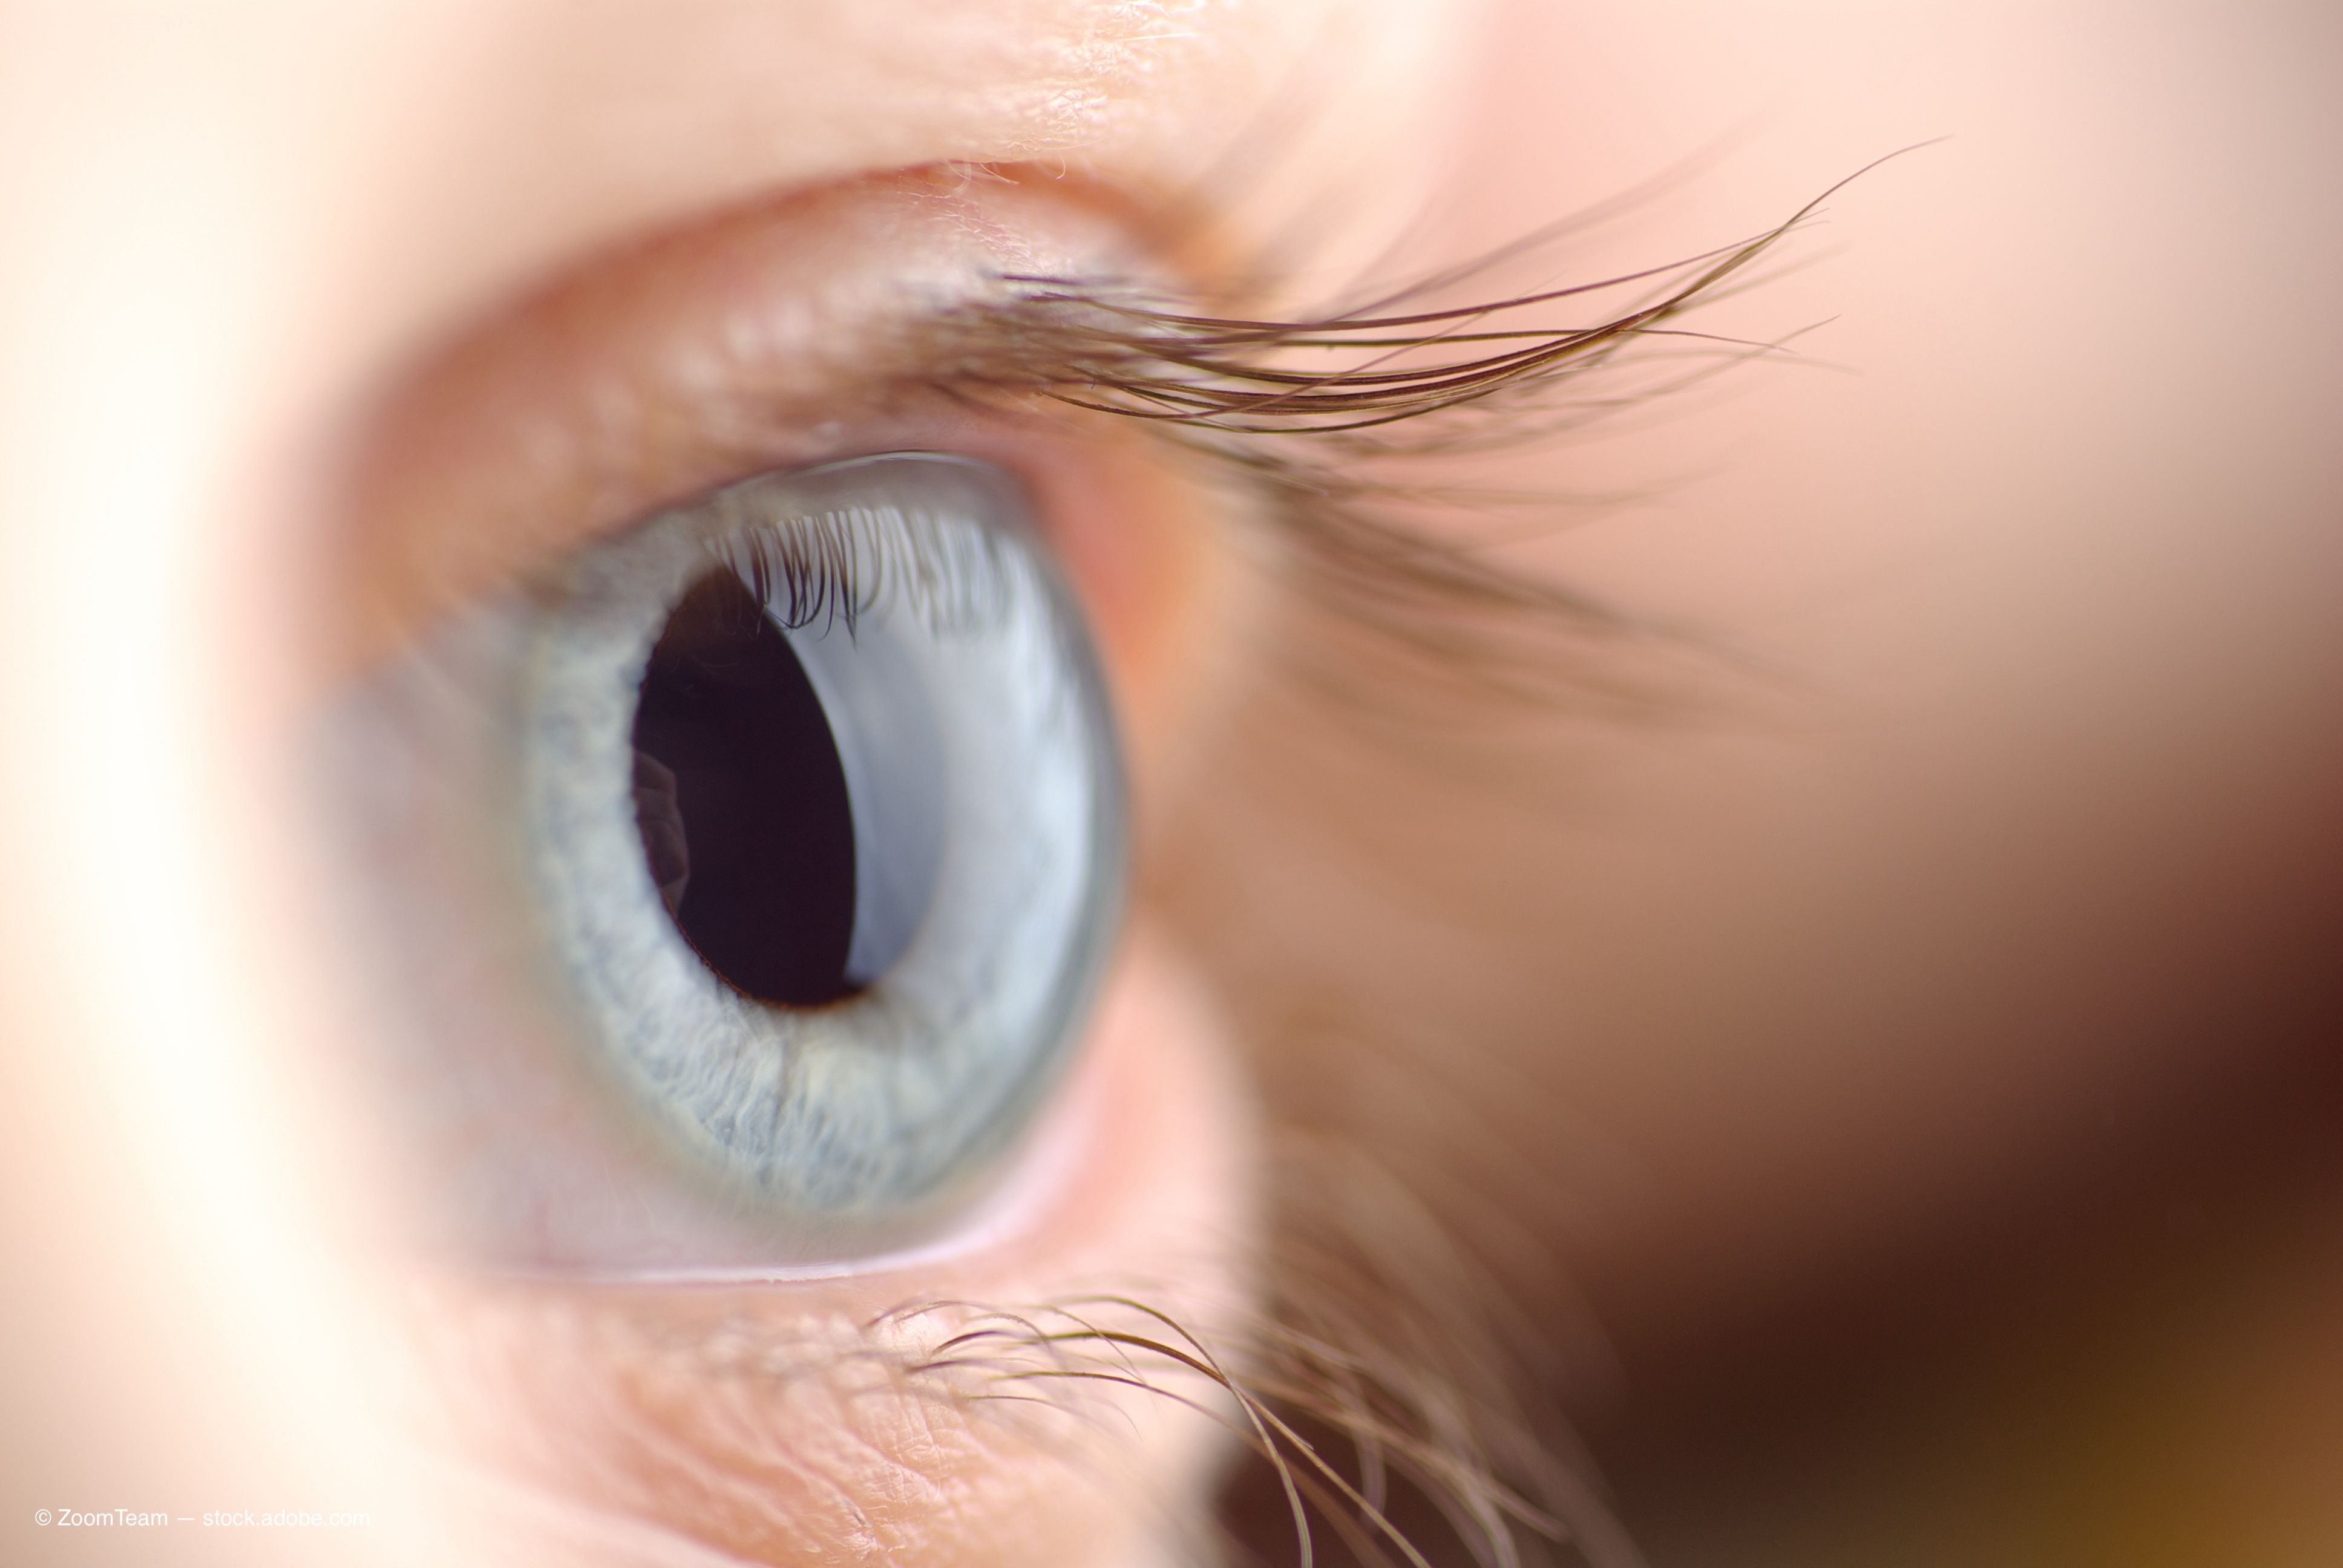 Glaukos lanza el programa clínico de salud corneal de fase 2 para la terapia iLink